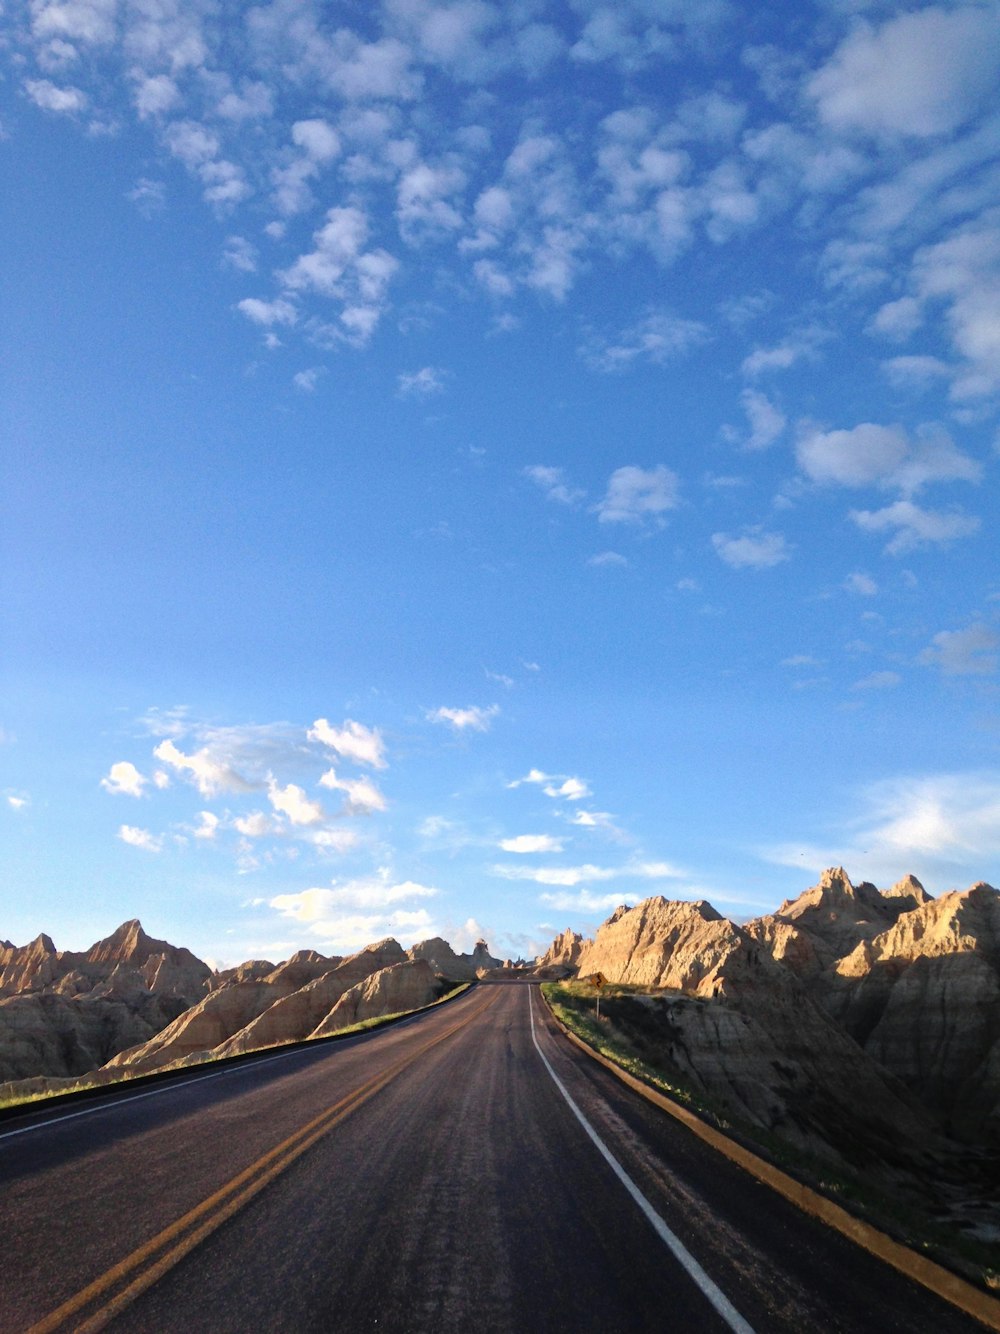 Estrada de concreto calma cercada por montanhas rochosas durante o dia